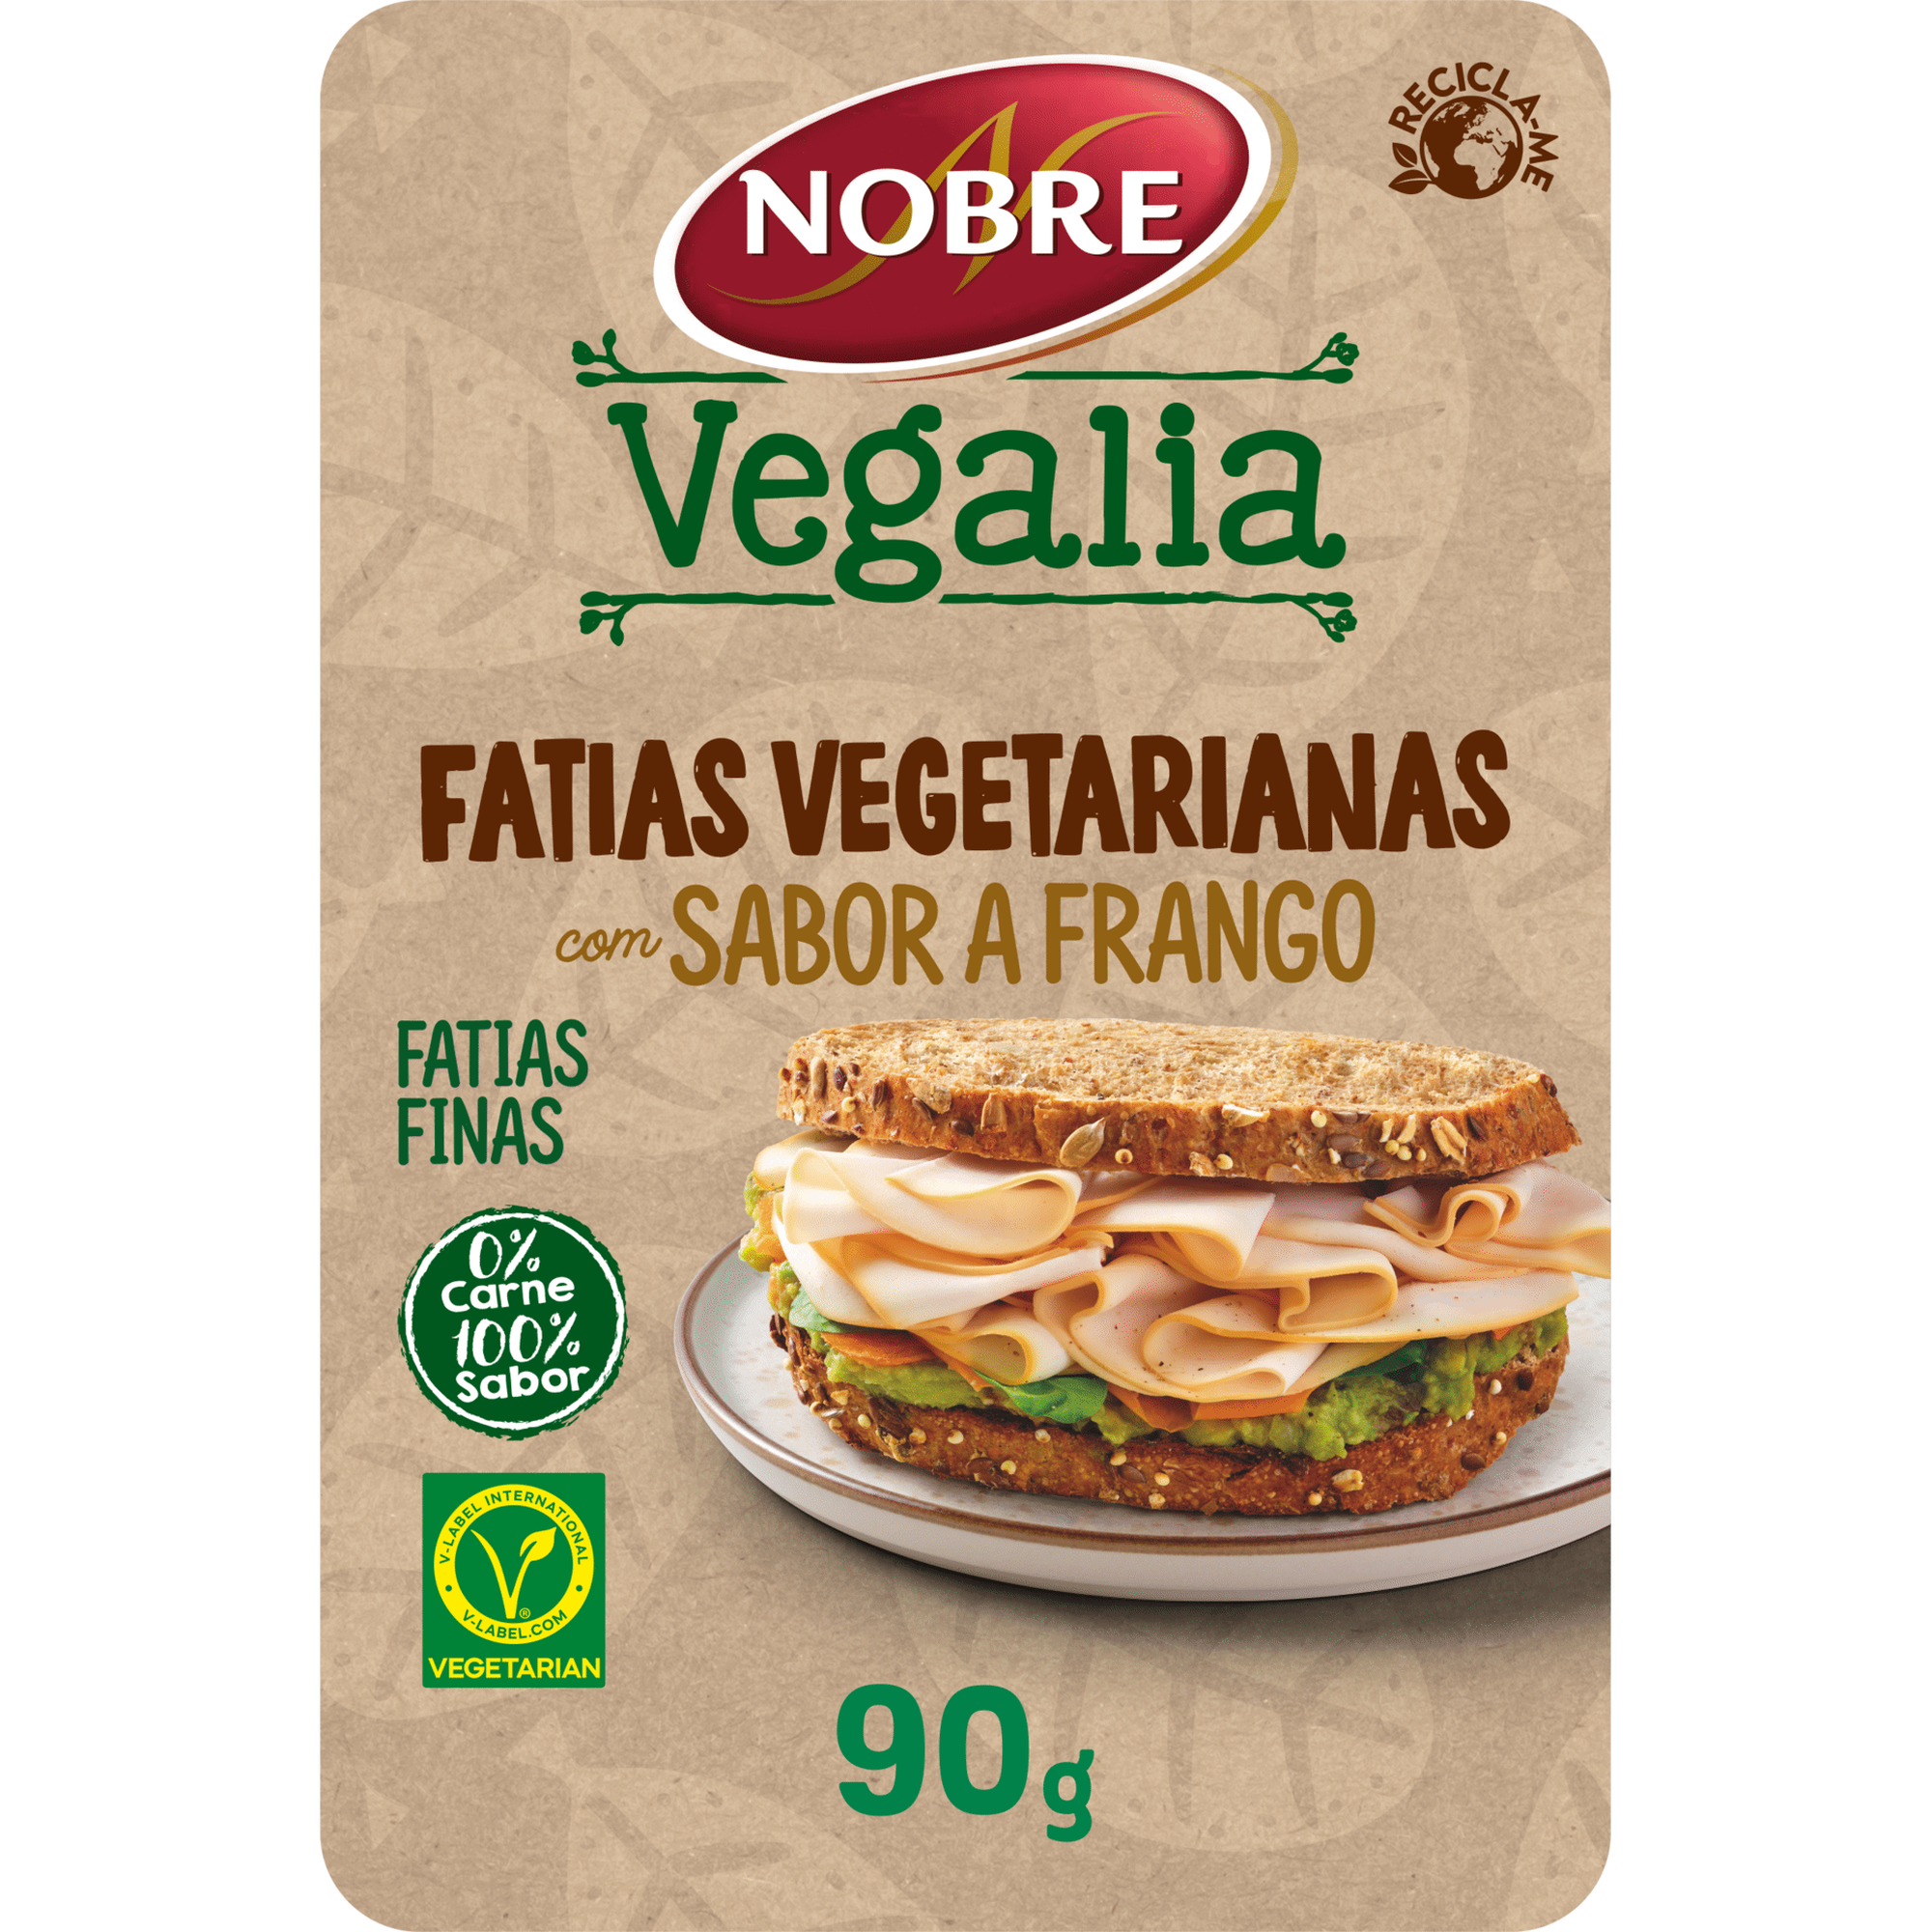 Fatias Vegetarianas com Sabor a Frango